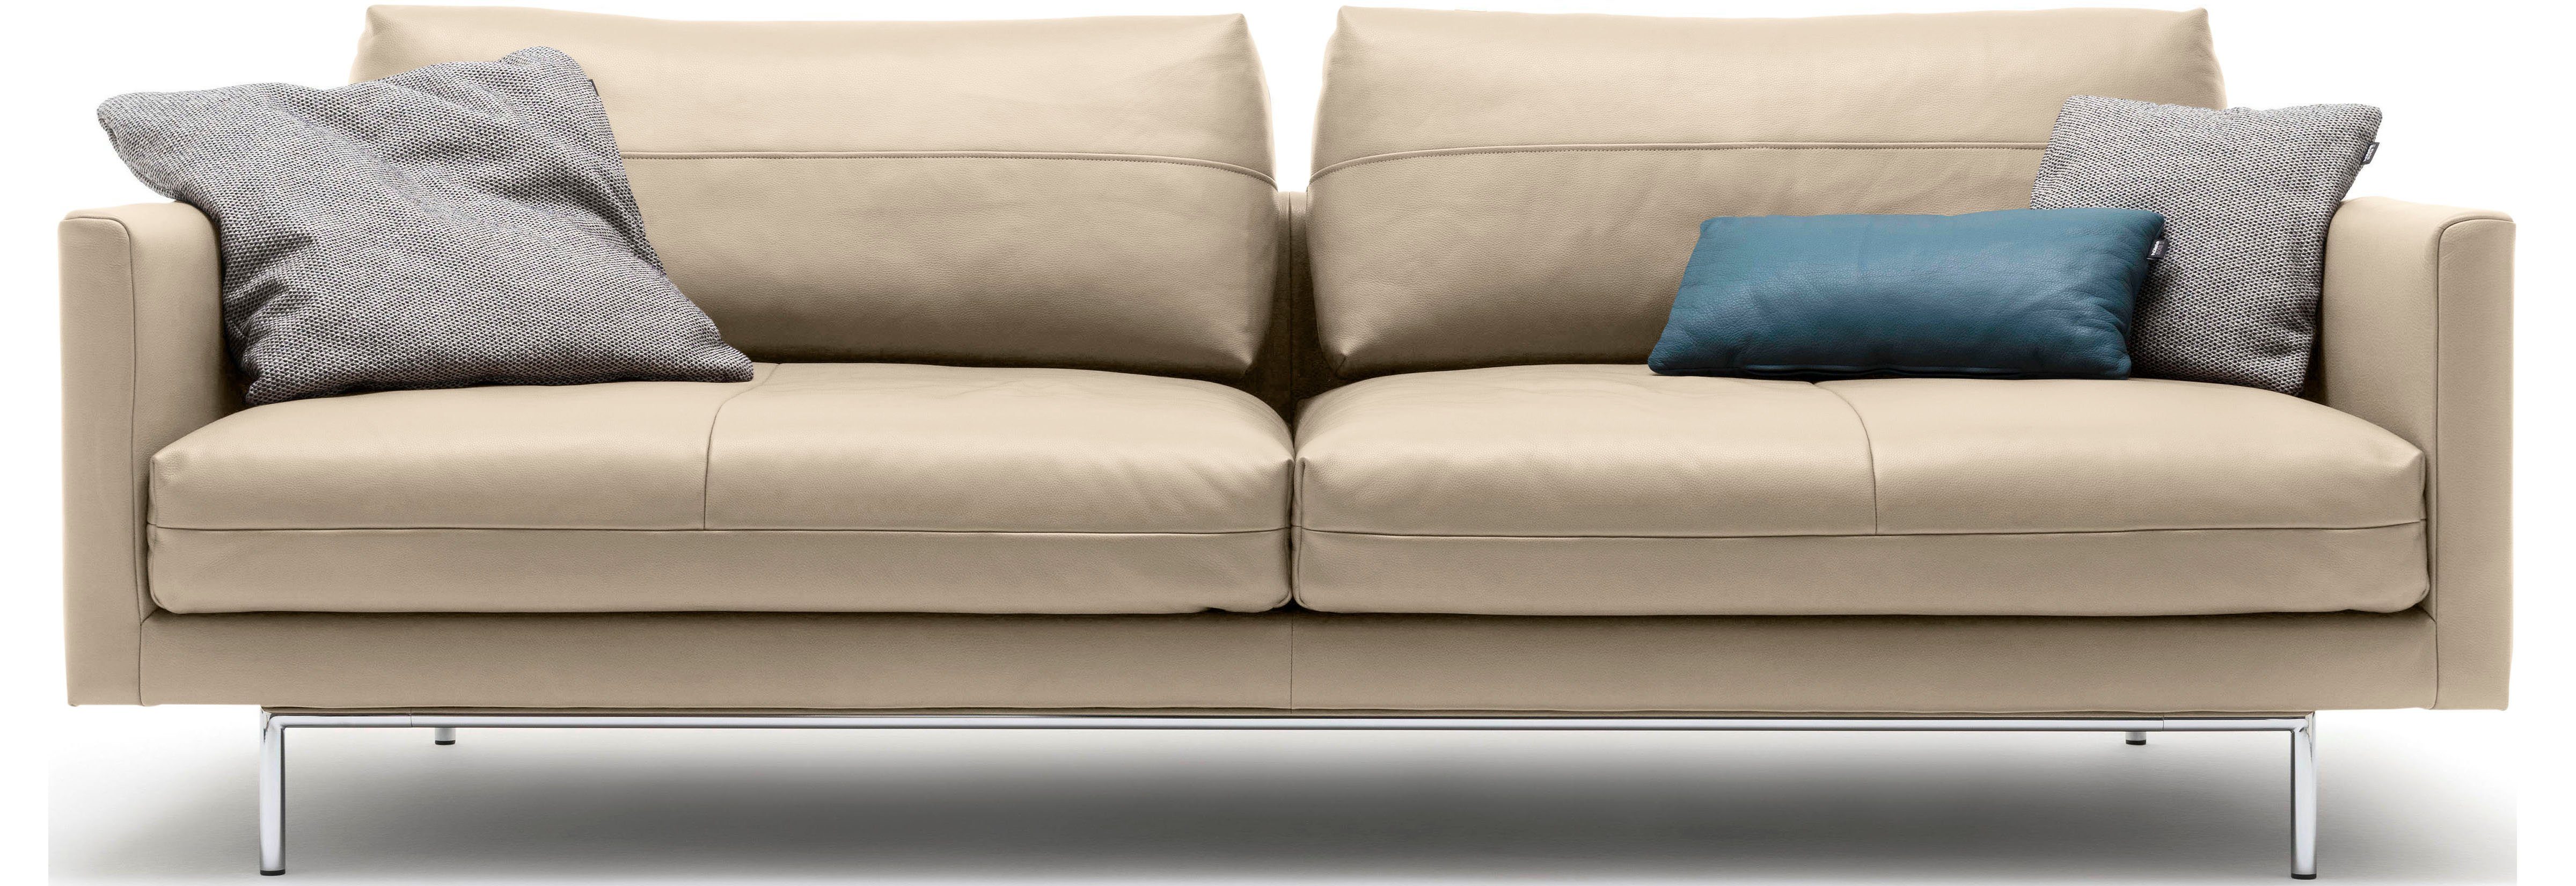 4-Sitzer beige sofa hülsta | beige